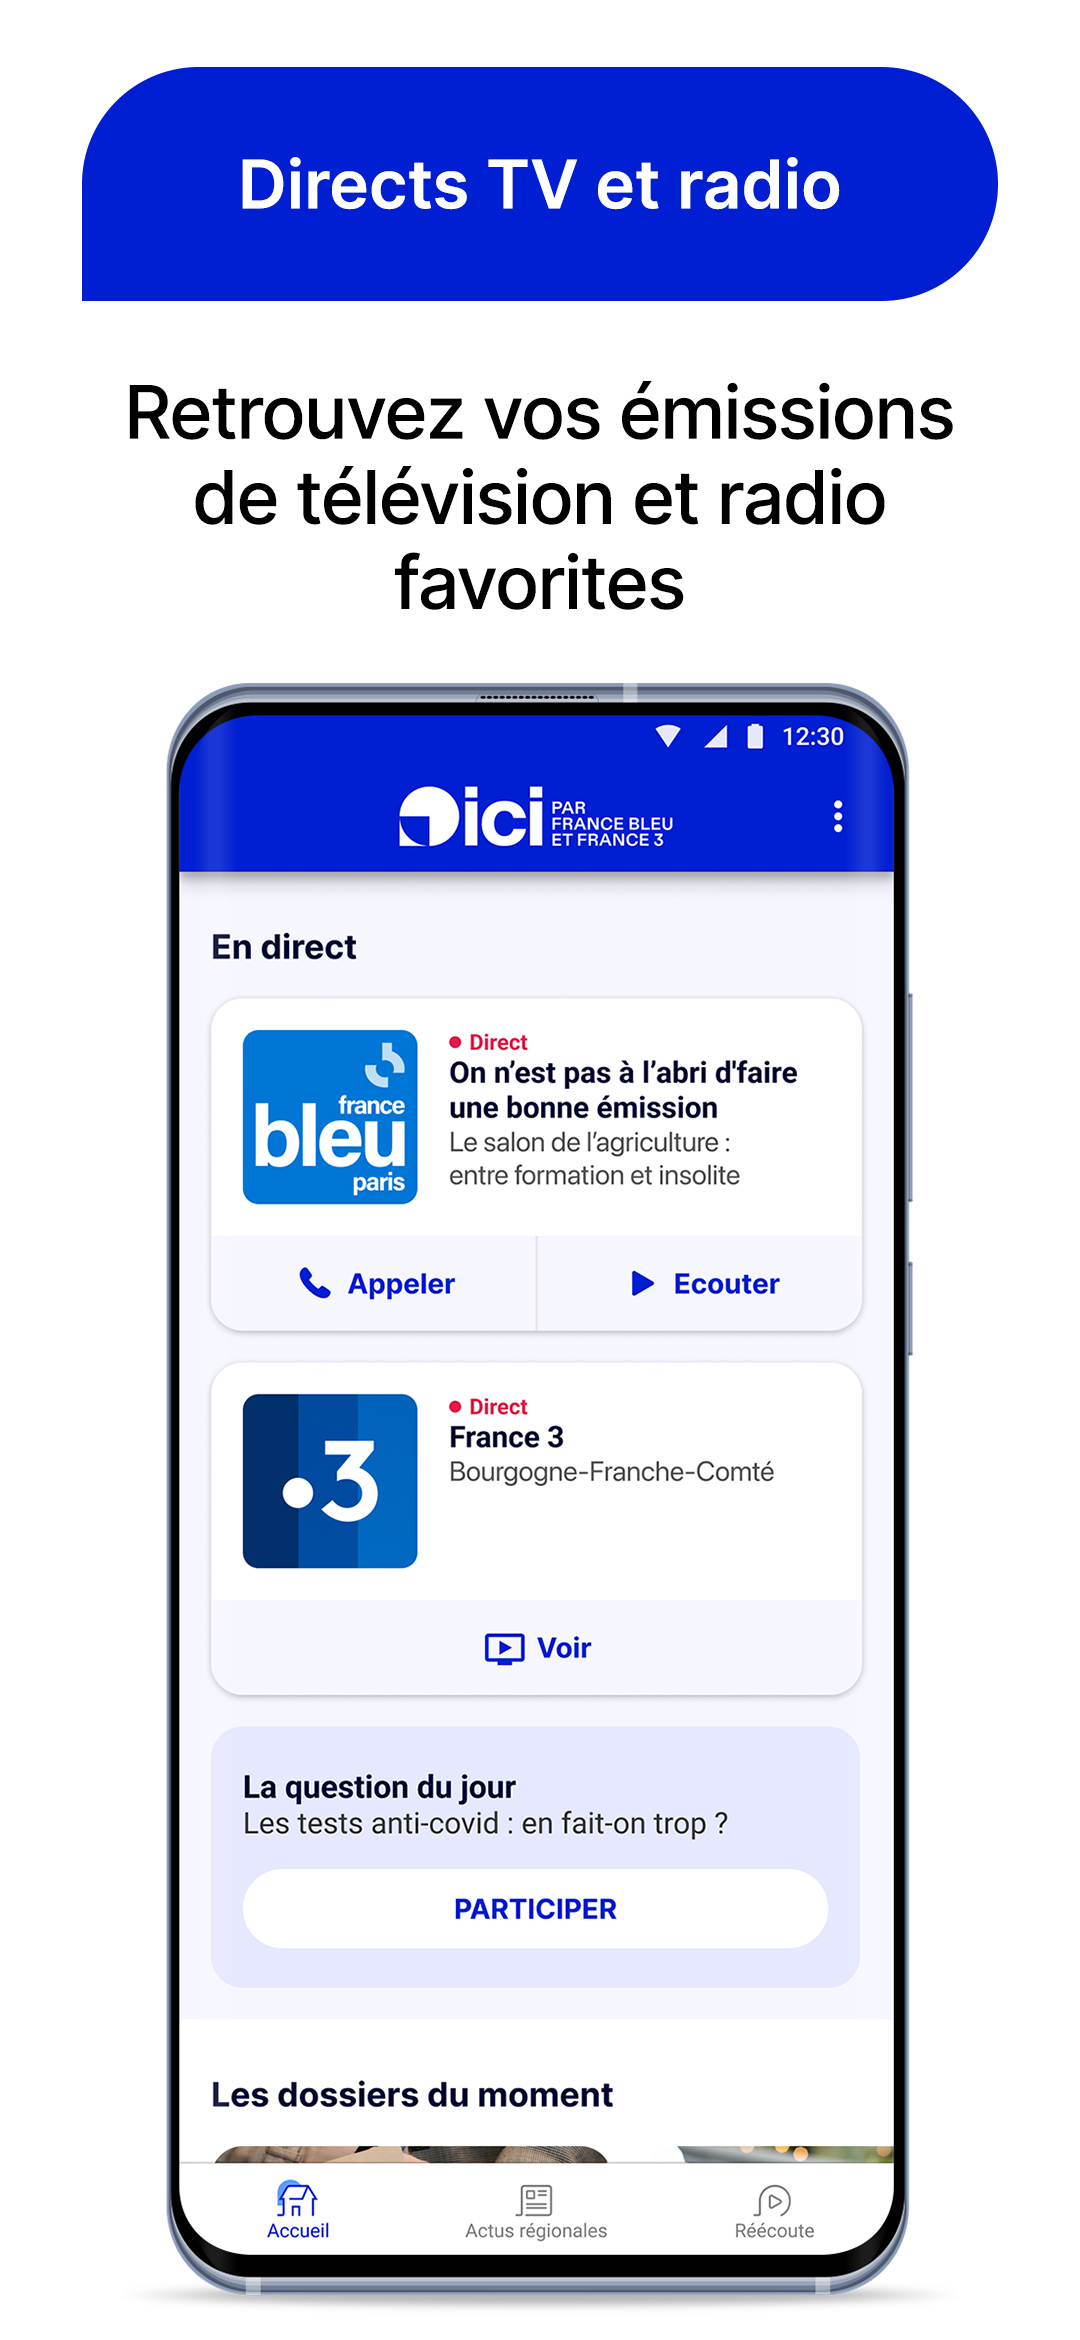 ici par France Bleu & France 3 APK 15.9.2 for Android – Download ici par France  Bleu & France 3 XAPK (APK Bundle) Latest Version from APKFab.com